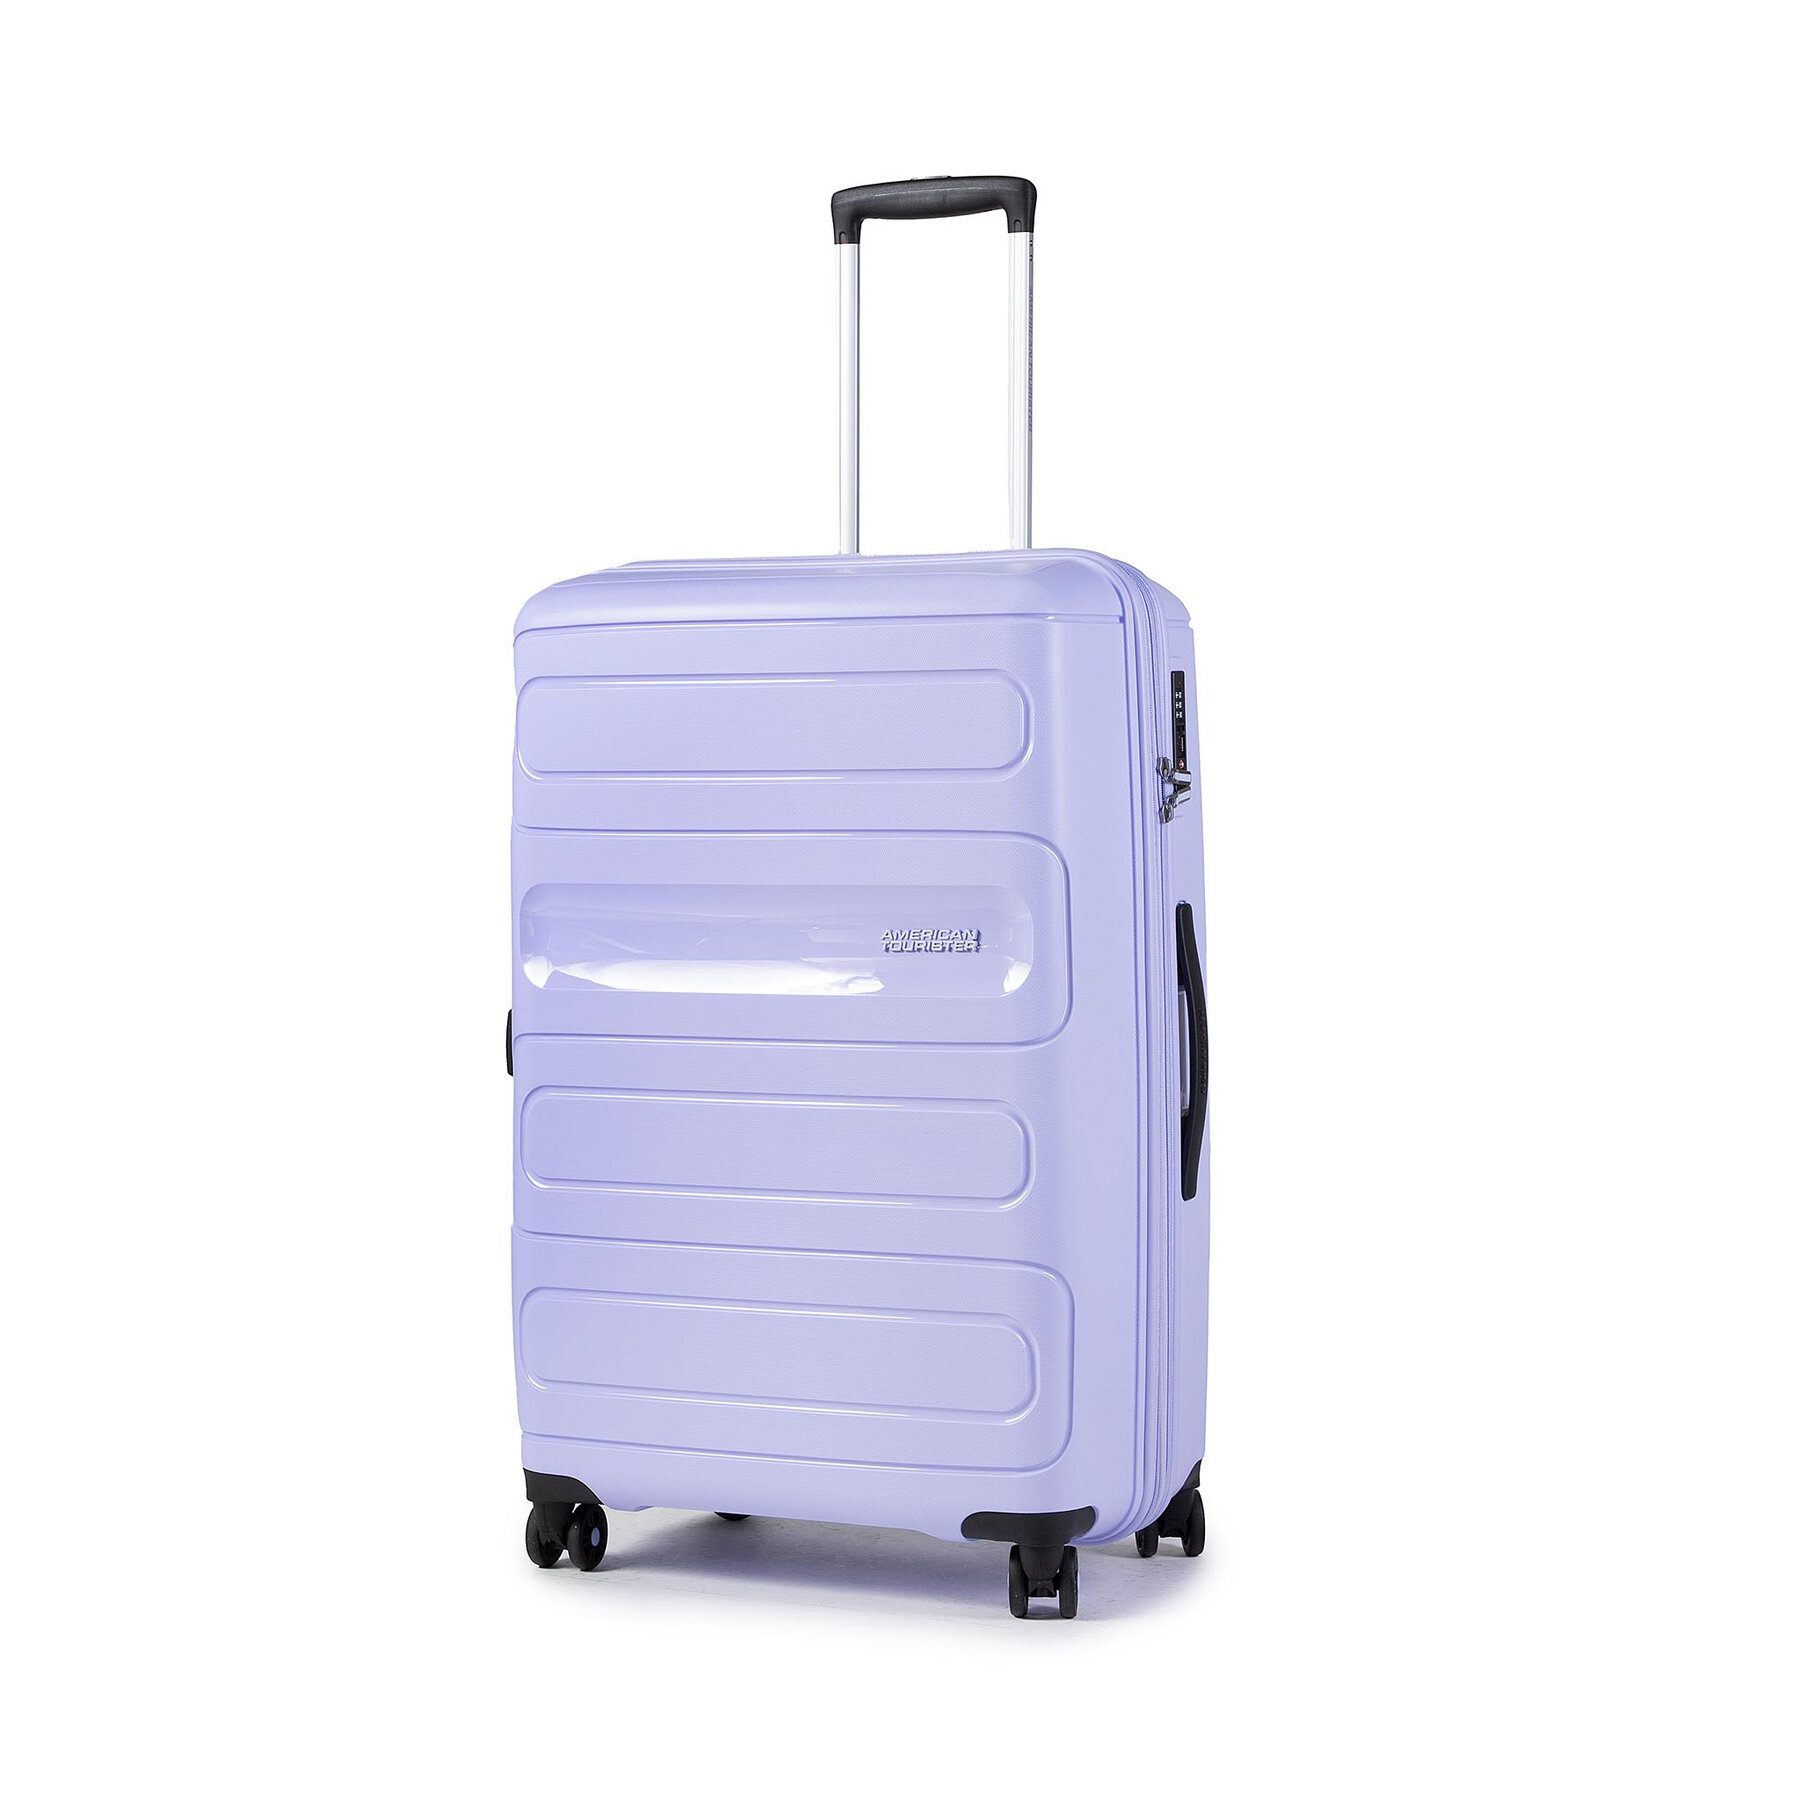 Comprar en oferta American Tourister Sunside 4 Wheel Trolley 77 cm pastel blue